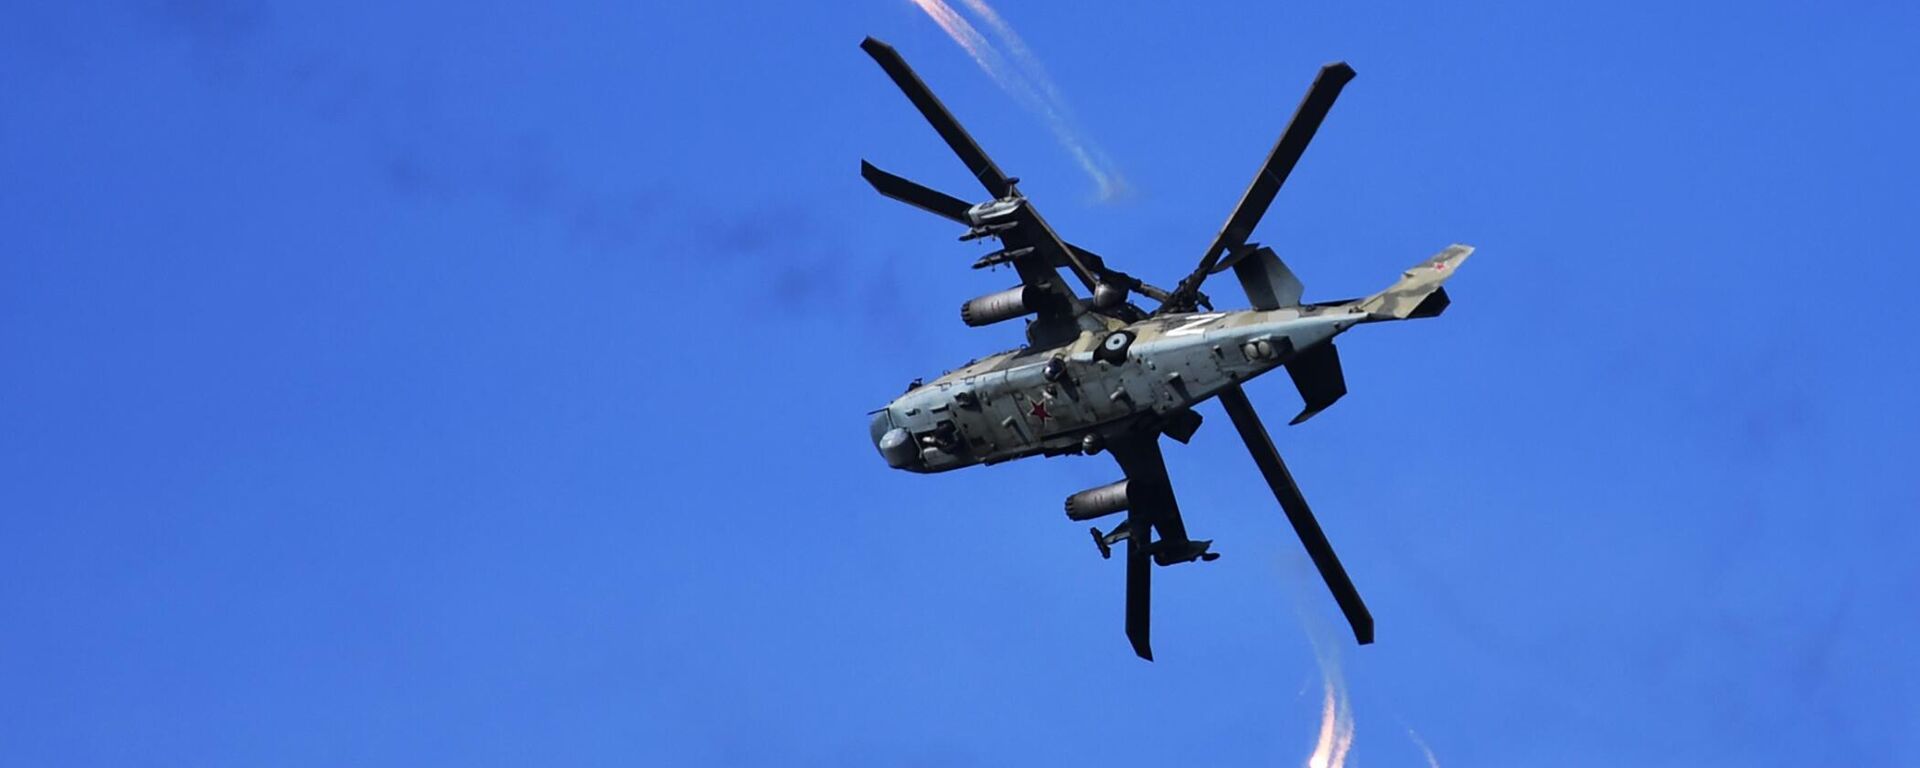 طائرة هليكوبتر من طراز كا-52 تطلق مصائد حرارية بعد إطلاقها النار على مواقع القوات المسلحة الأوكرانية في منطقة العملية العسكرية الخاصة في منطقة دونيتسك. - سبوتنيك عربي, 1920, 26.02.2023